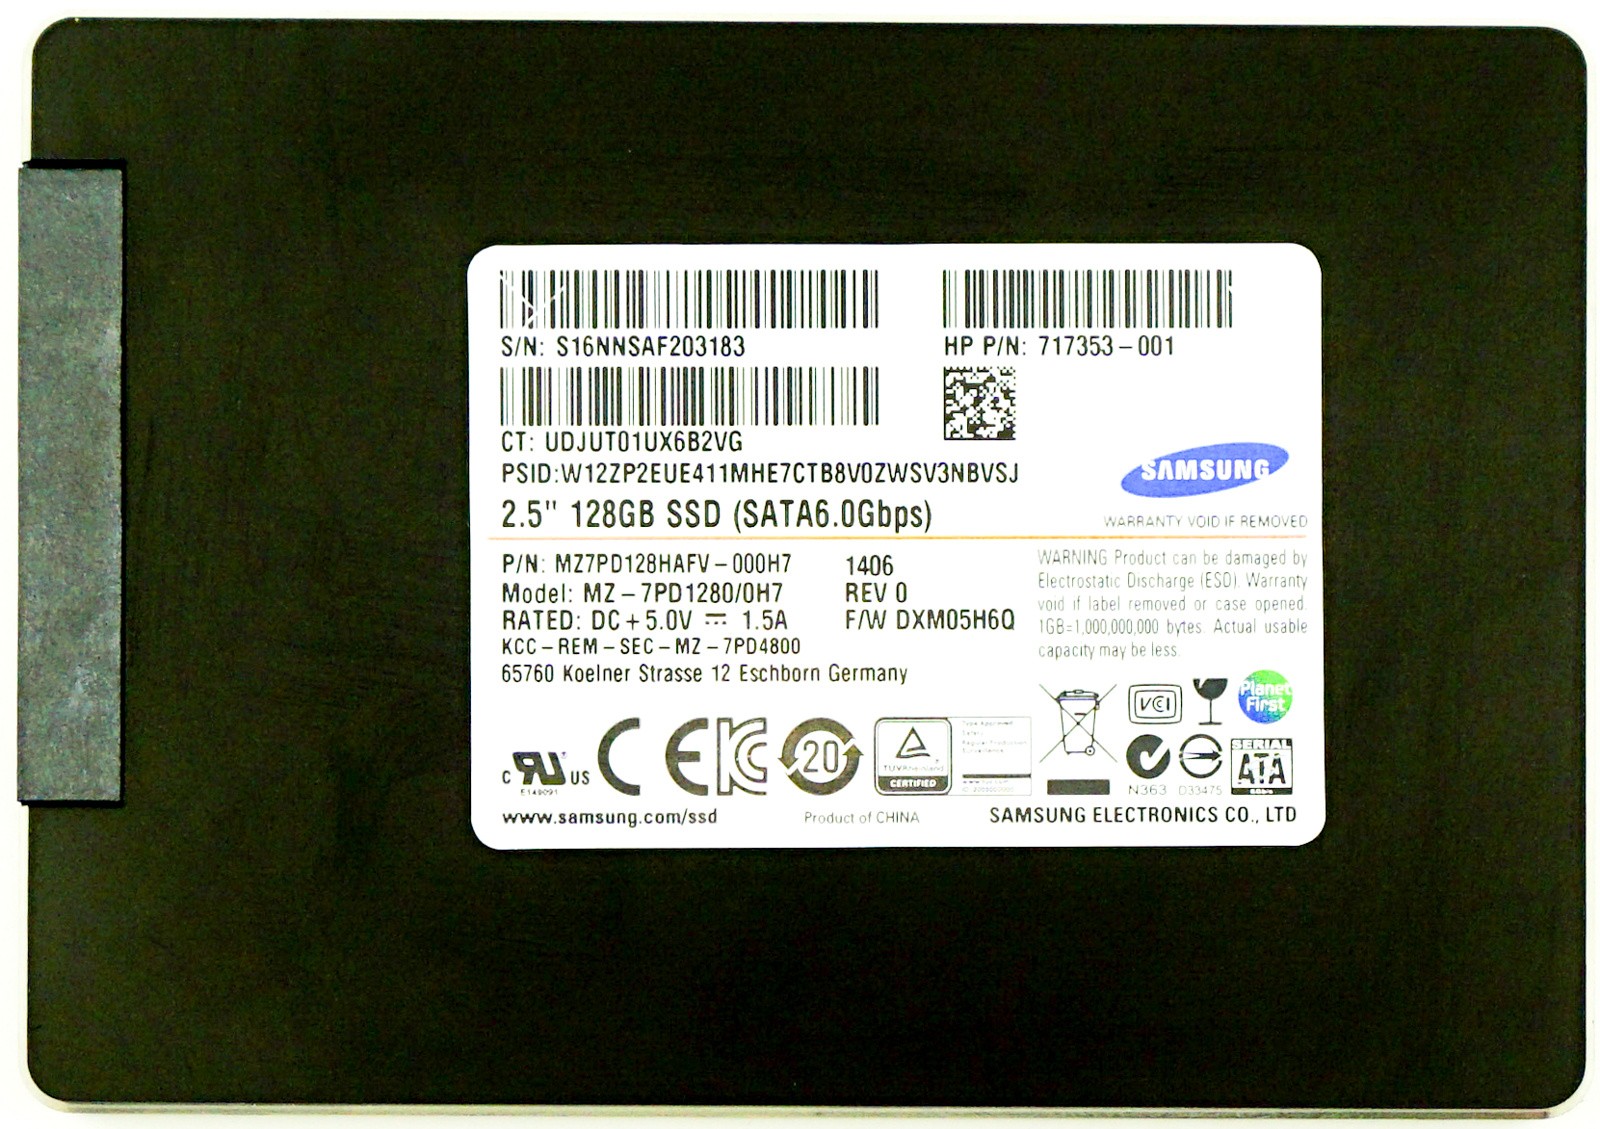 HP (717353-001) 128GB SATA III (SFF) 6Gb/s SSD